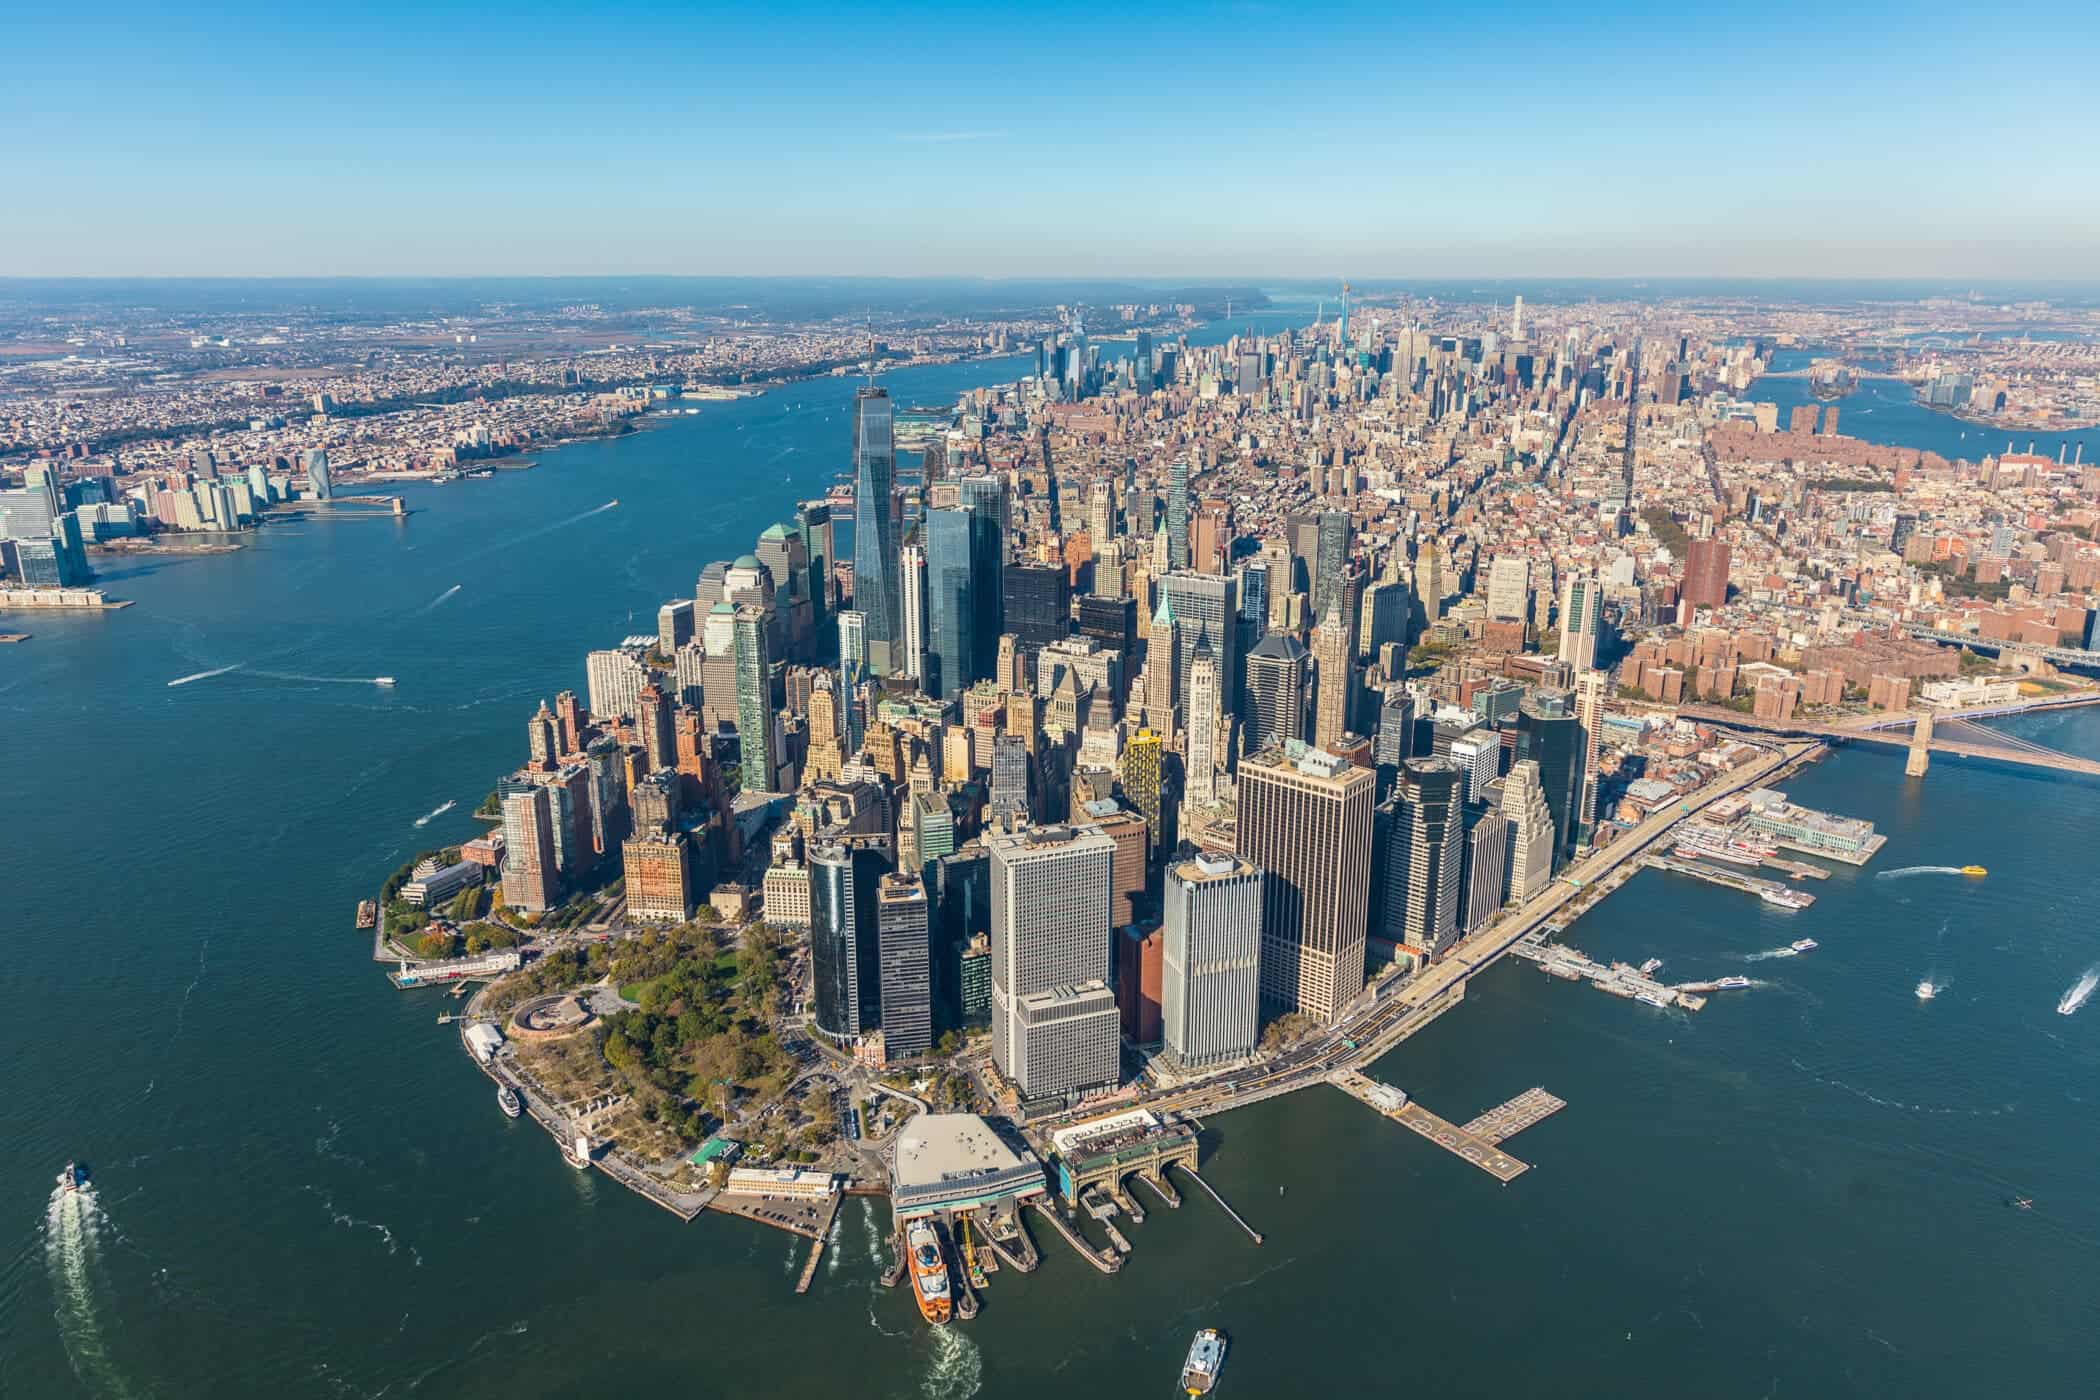 ニューヨーク市が高層ビル郡の重みで徐々に沈んでいることが研究から判明